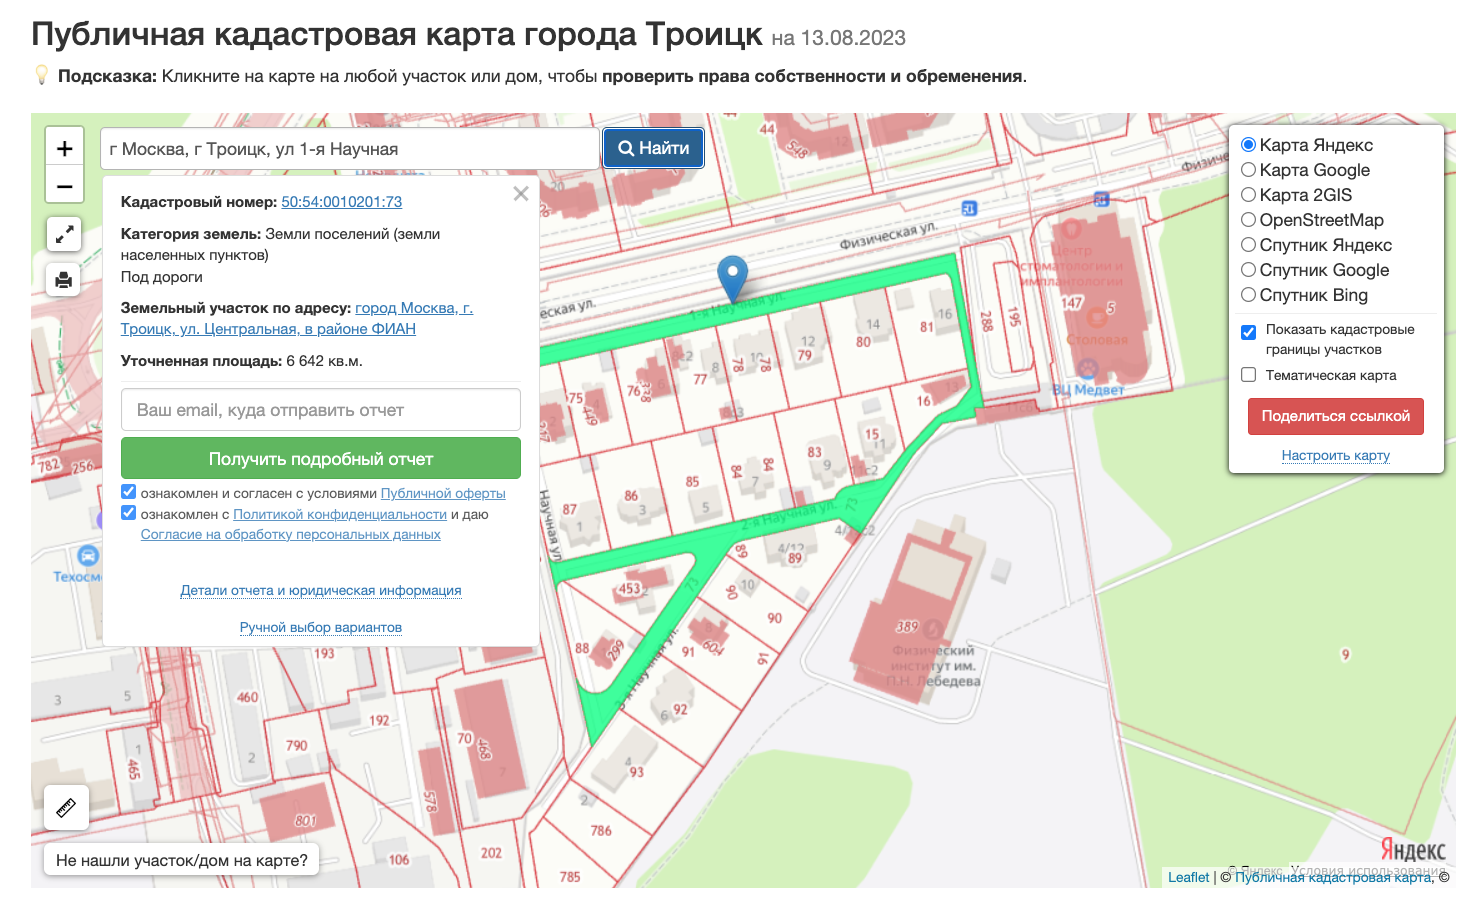 Кадастровая карта города Троицка.png